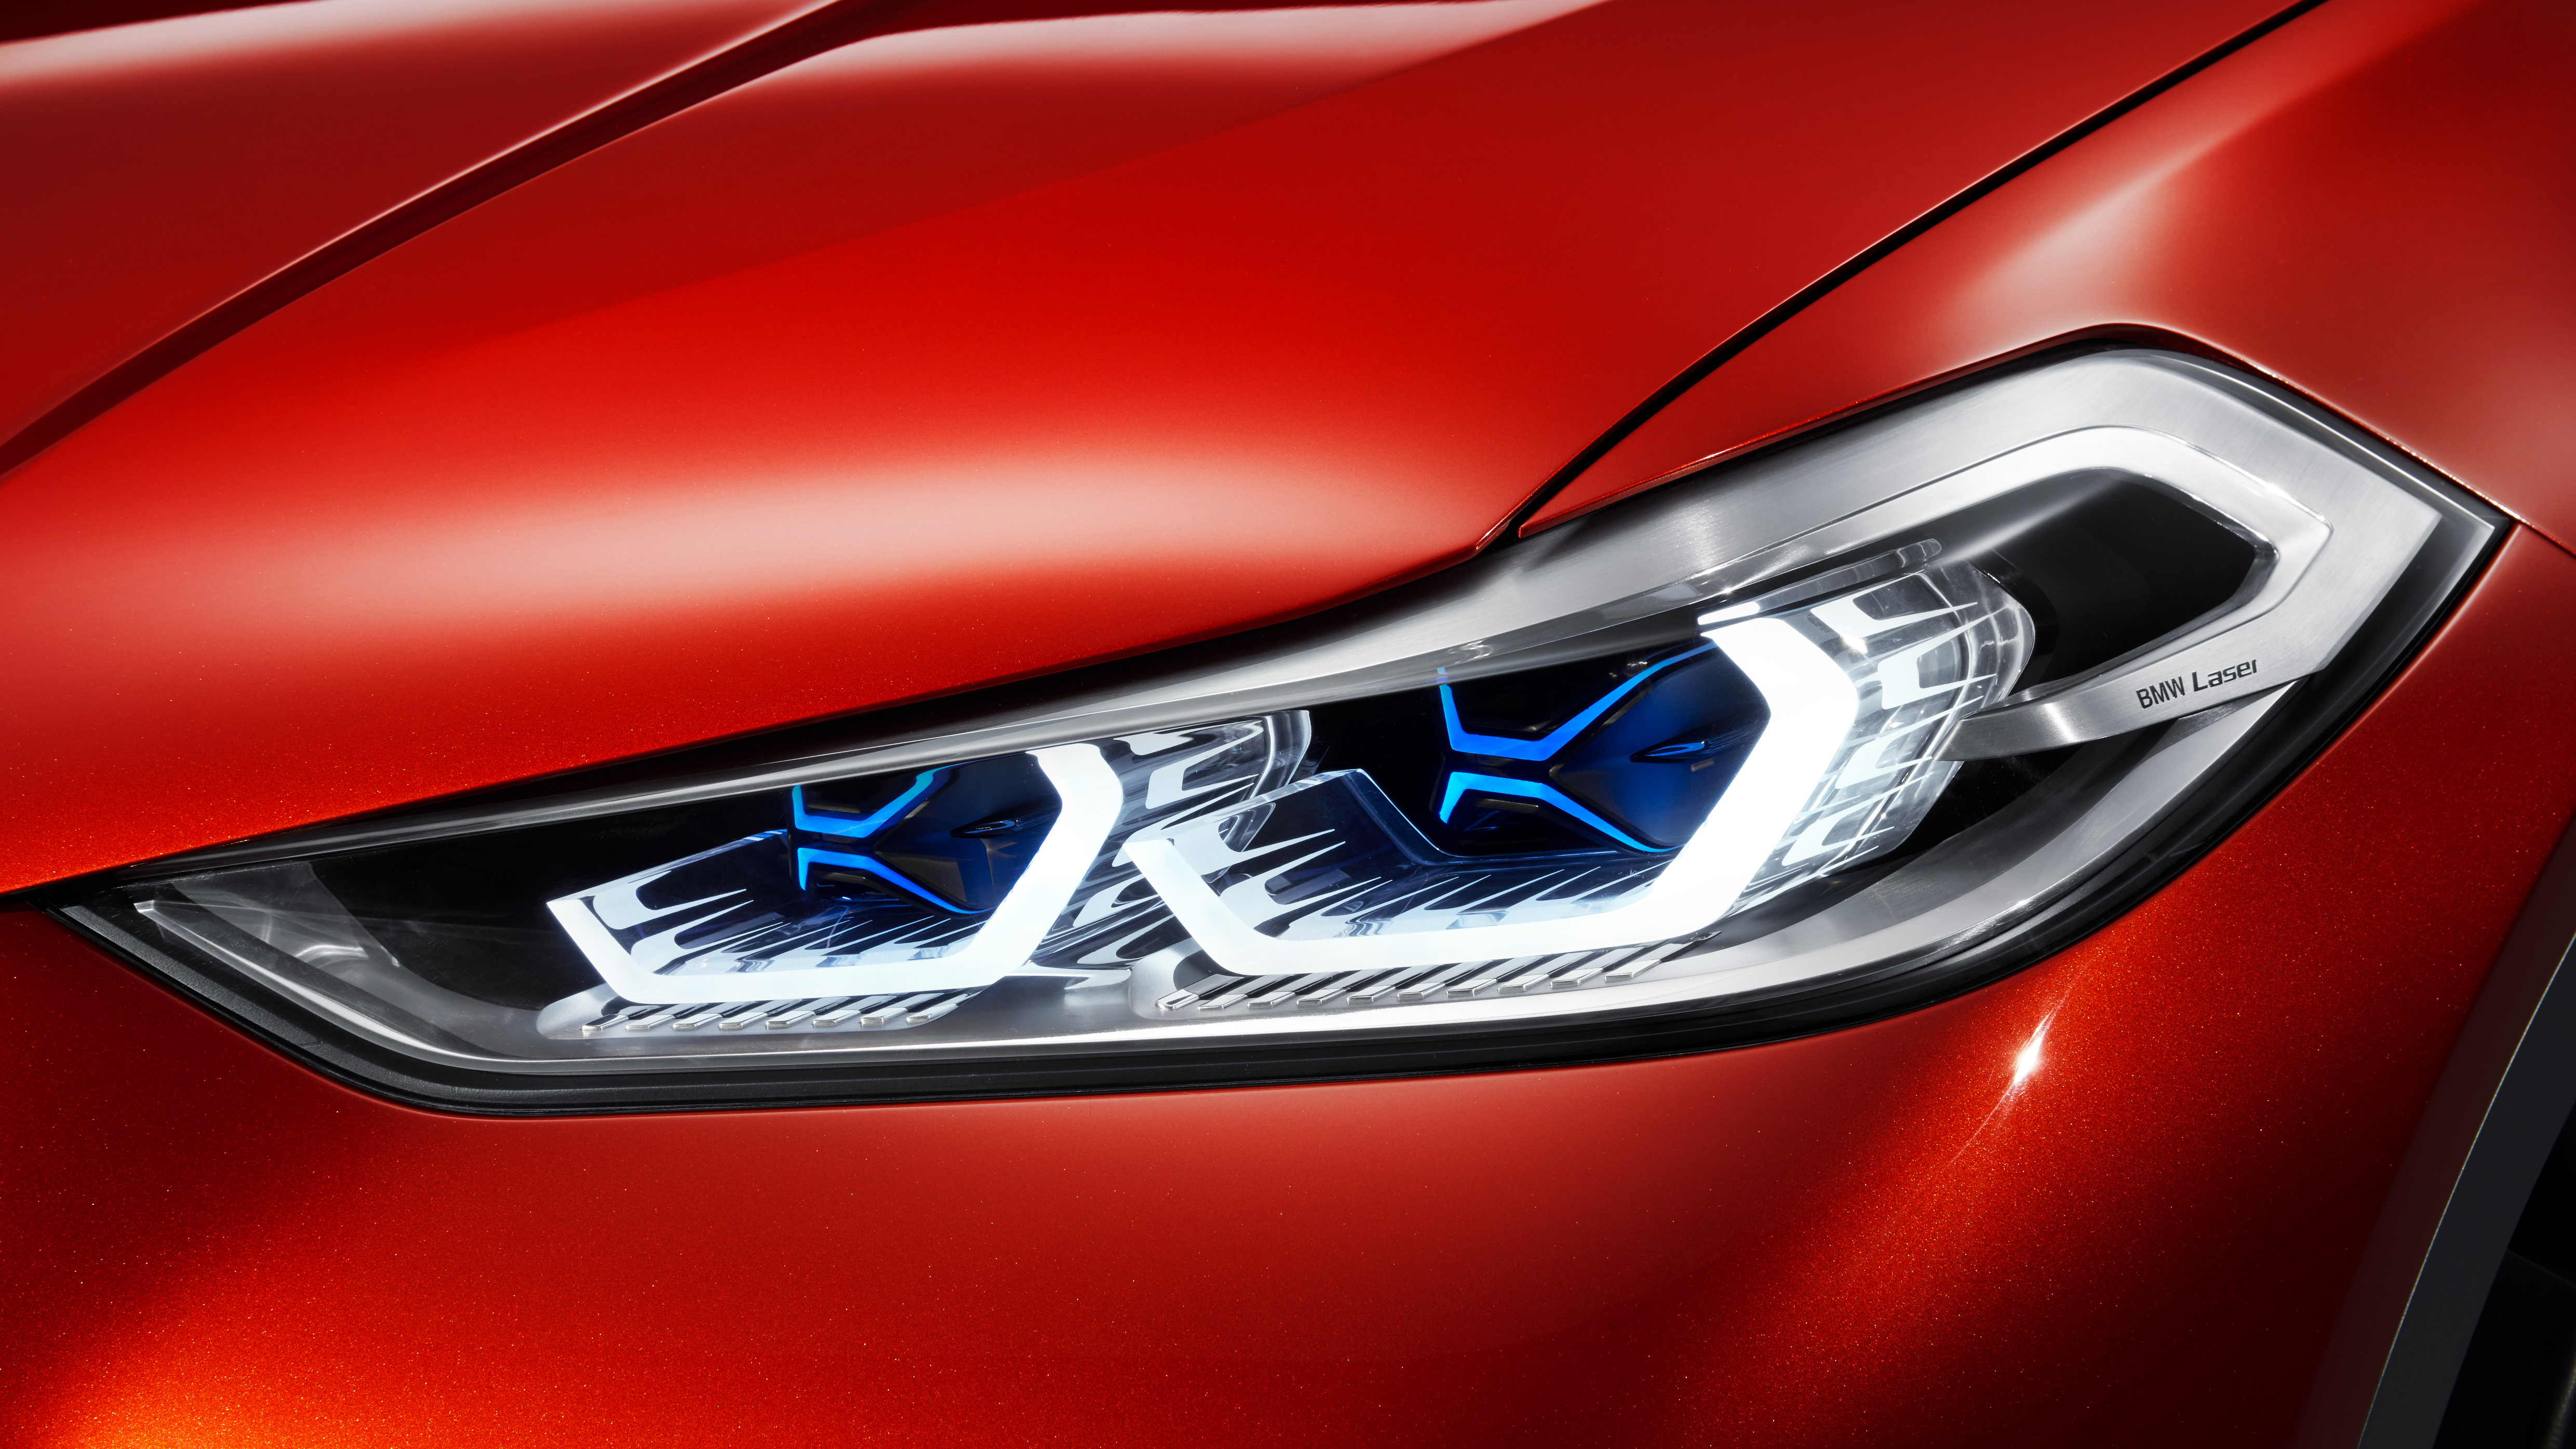 2018 BMW X2 Laser Headlights Wallpaper | HD Car Wallpapers | ID #7311